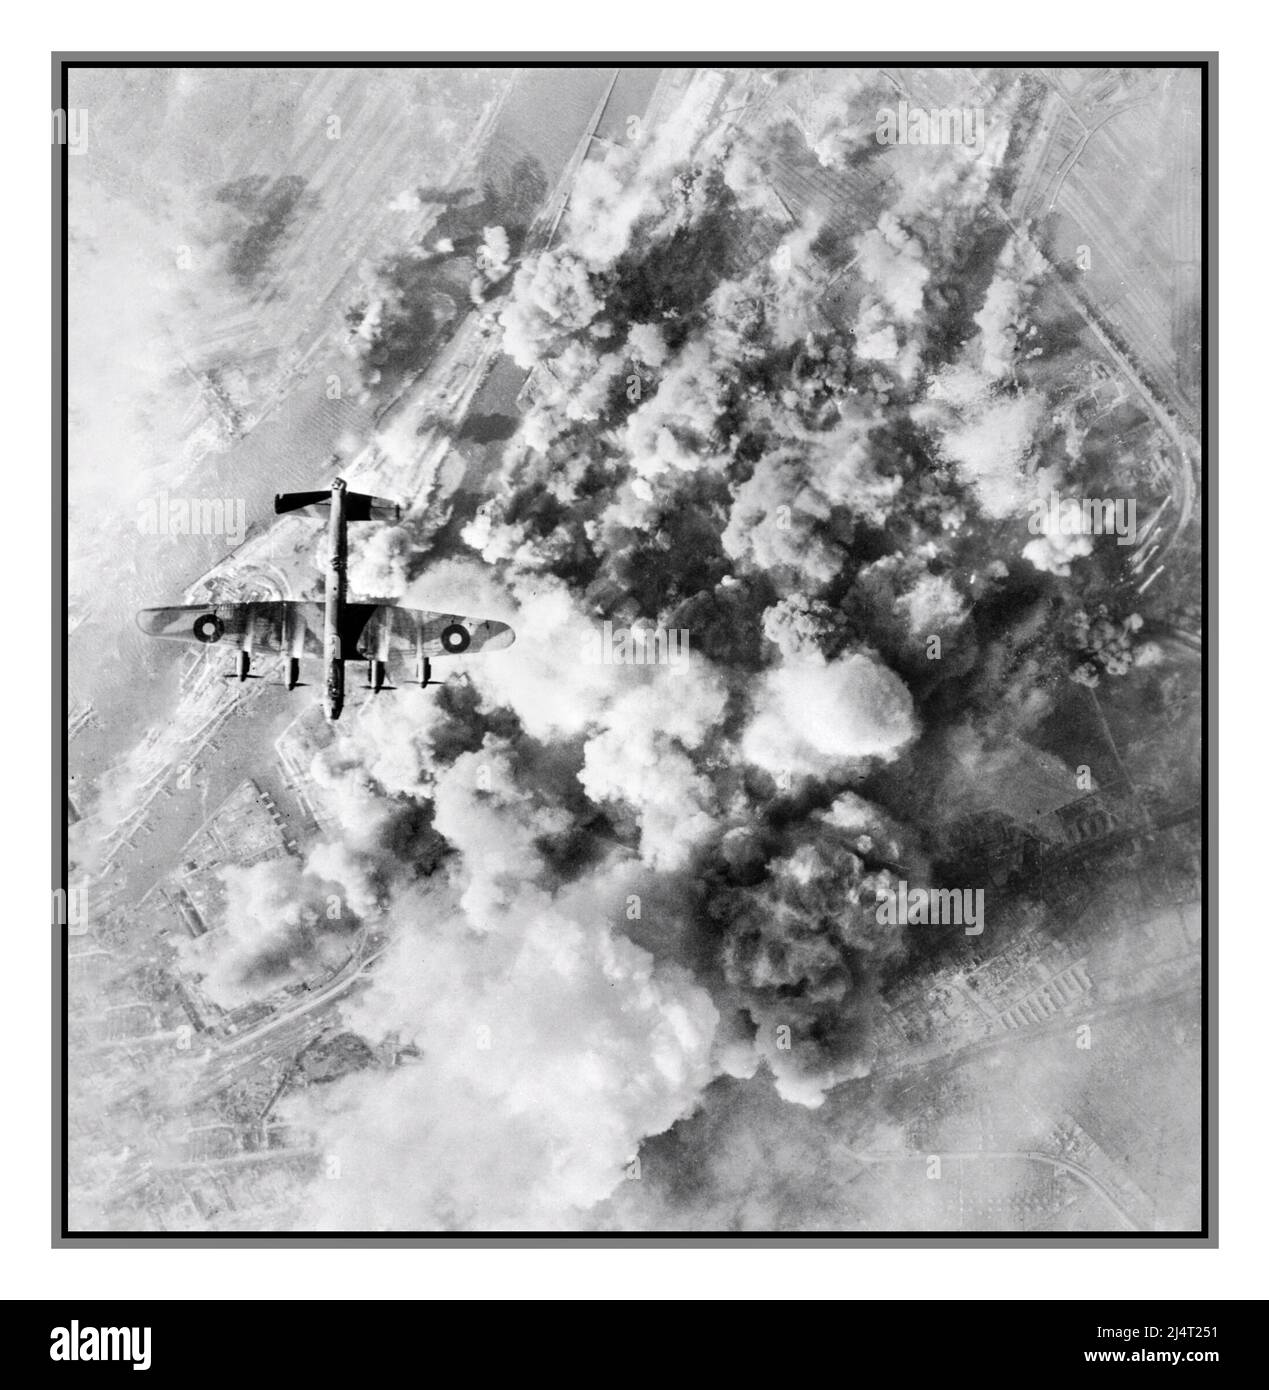 BOMBARDIER LANCASTER WW2 BREMEN ALLEMAGNE NAZIE bombardement de la RAF par Avro Lancaster, de l'escadron bombardier polonais n° 300, survolant la zone cible protégée par la fumée lors d'une attaque de jour sur la raffinerie de pétrole et le dépôt de stockage de la Deutsche Vacuum AG à Brême par 133 Lancasters du Groupe n° 1 et 6 de Havilland moustiques du groupe n° 8, 21 mars 1945. Deuxième Guerre mondiale Banque D'Images